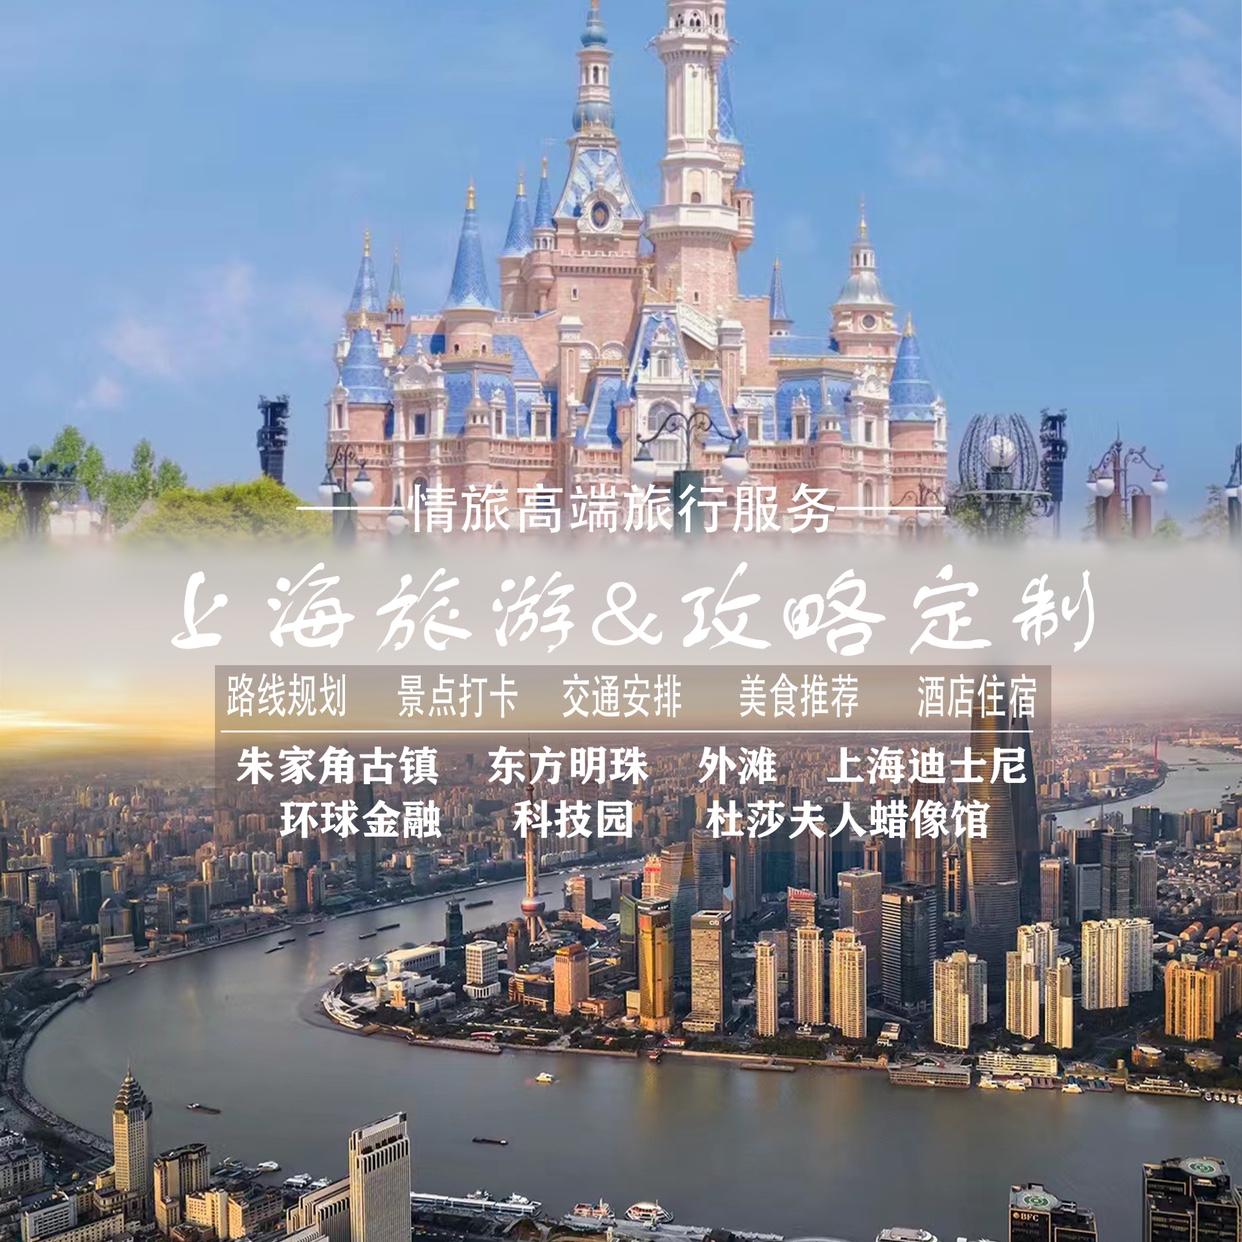 上海苏州杭州南京迪士尼乐园自由行自驾旅游攻略定制路线设计规划